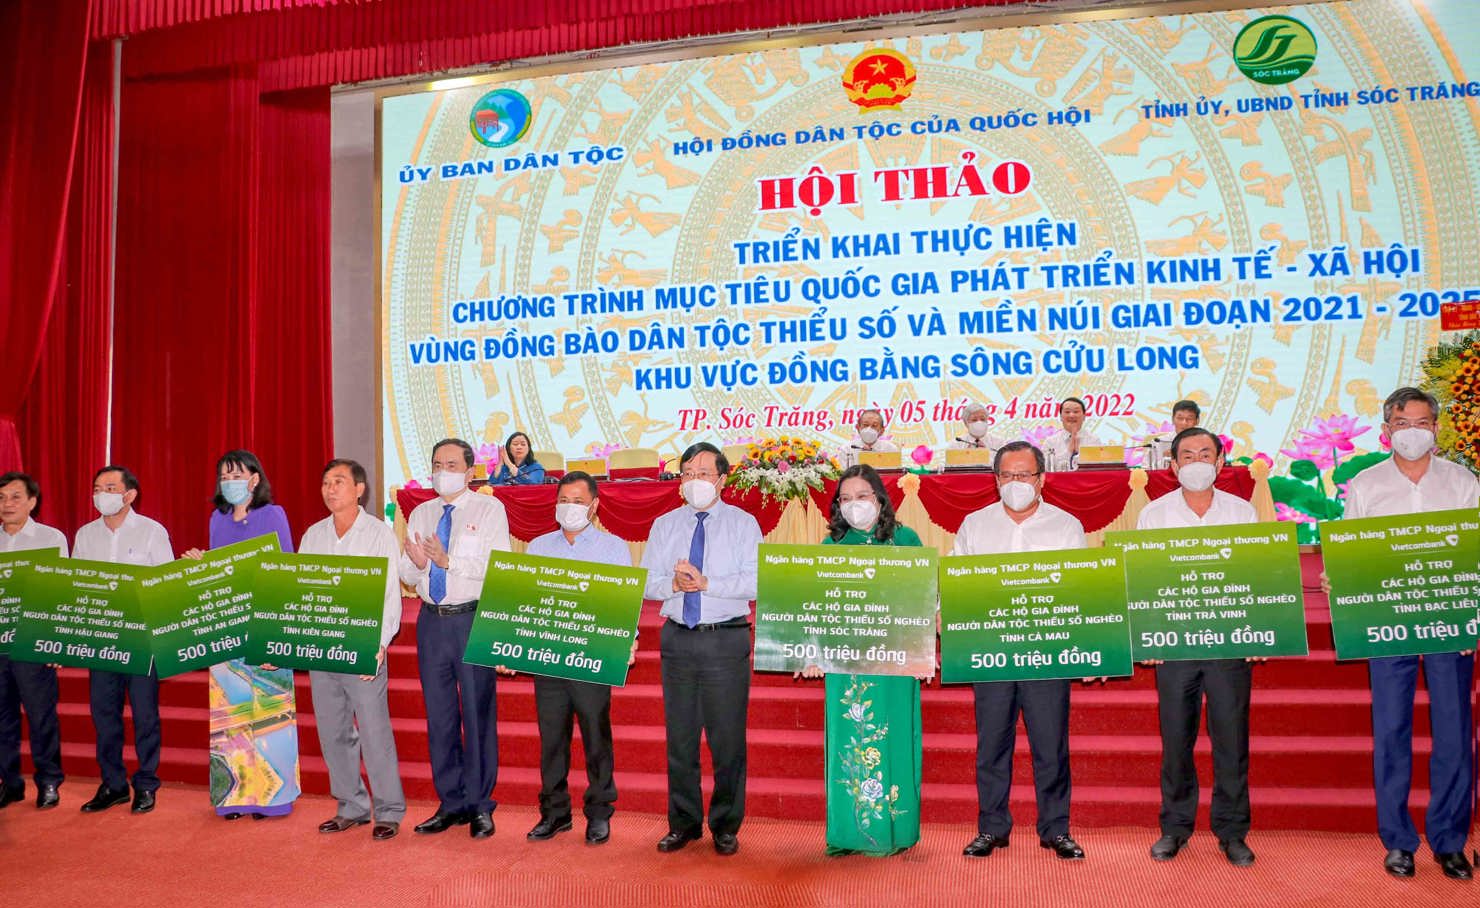 Phó Chủ tịch Quốc hội Trần Thanh Mẫn (thứ 5 từ phải sang) trao kinh phí hỗ trợ của Vietcombank cho đại diện 9 tỉnh Đng bằng Sông Cửu Long để hỗ trợ các hộ gia đình người dân tộc thiểu số nghèo